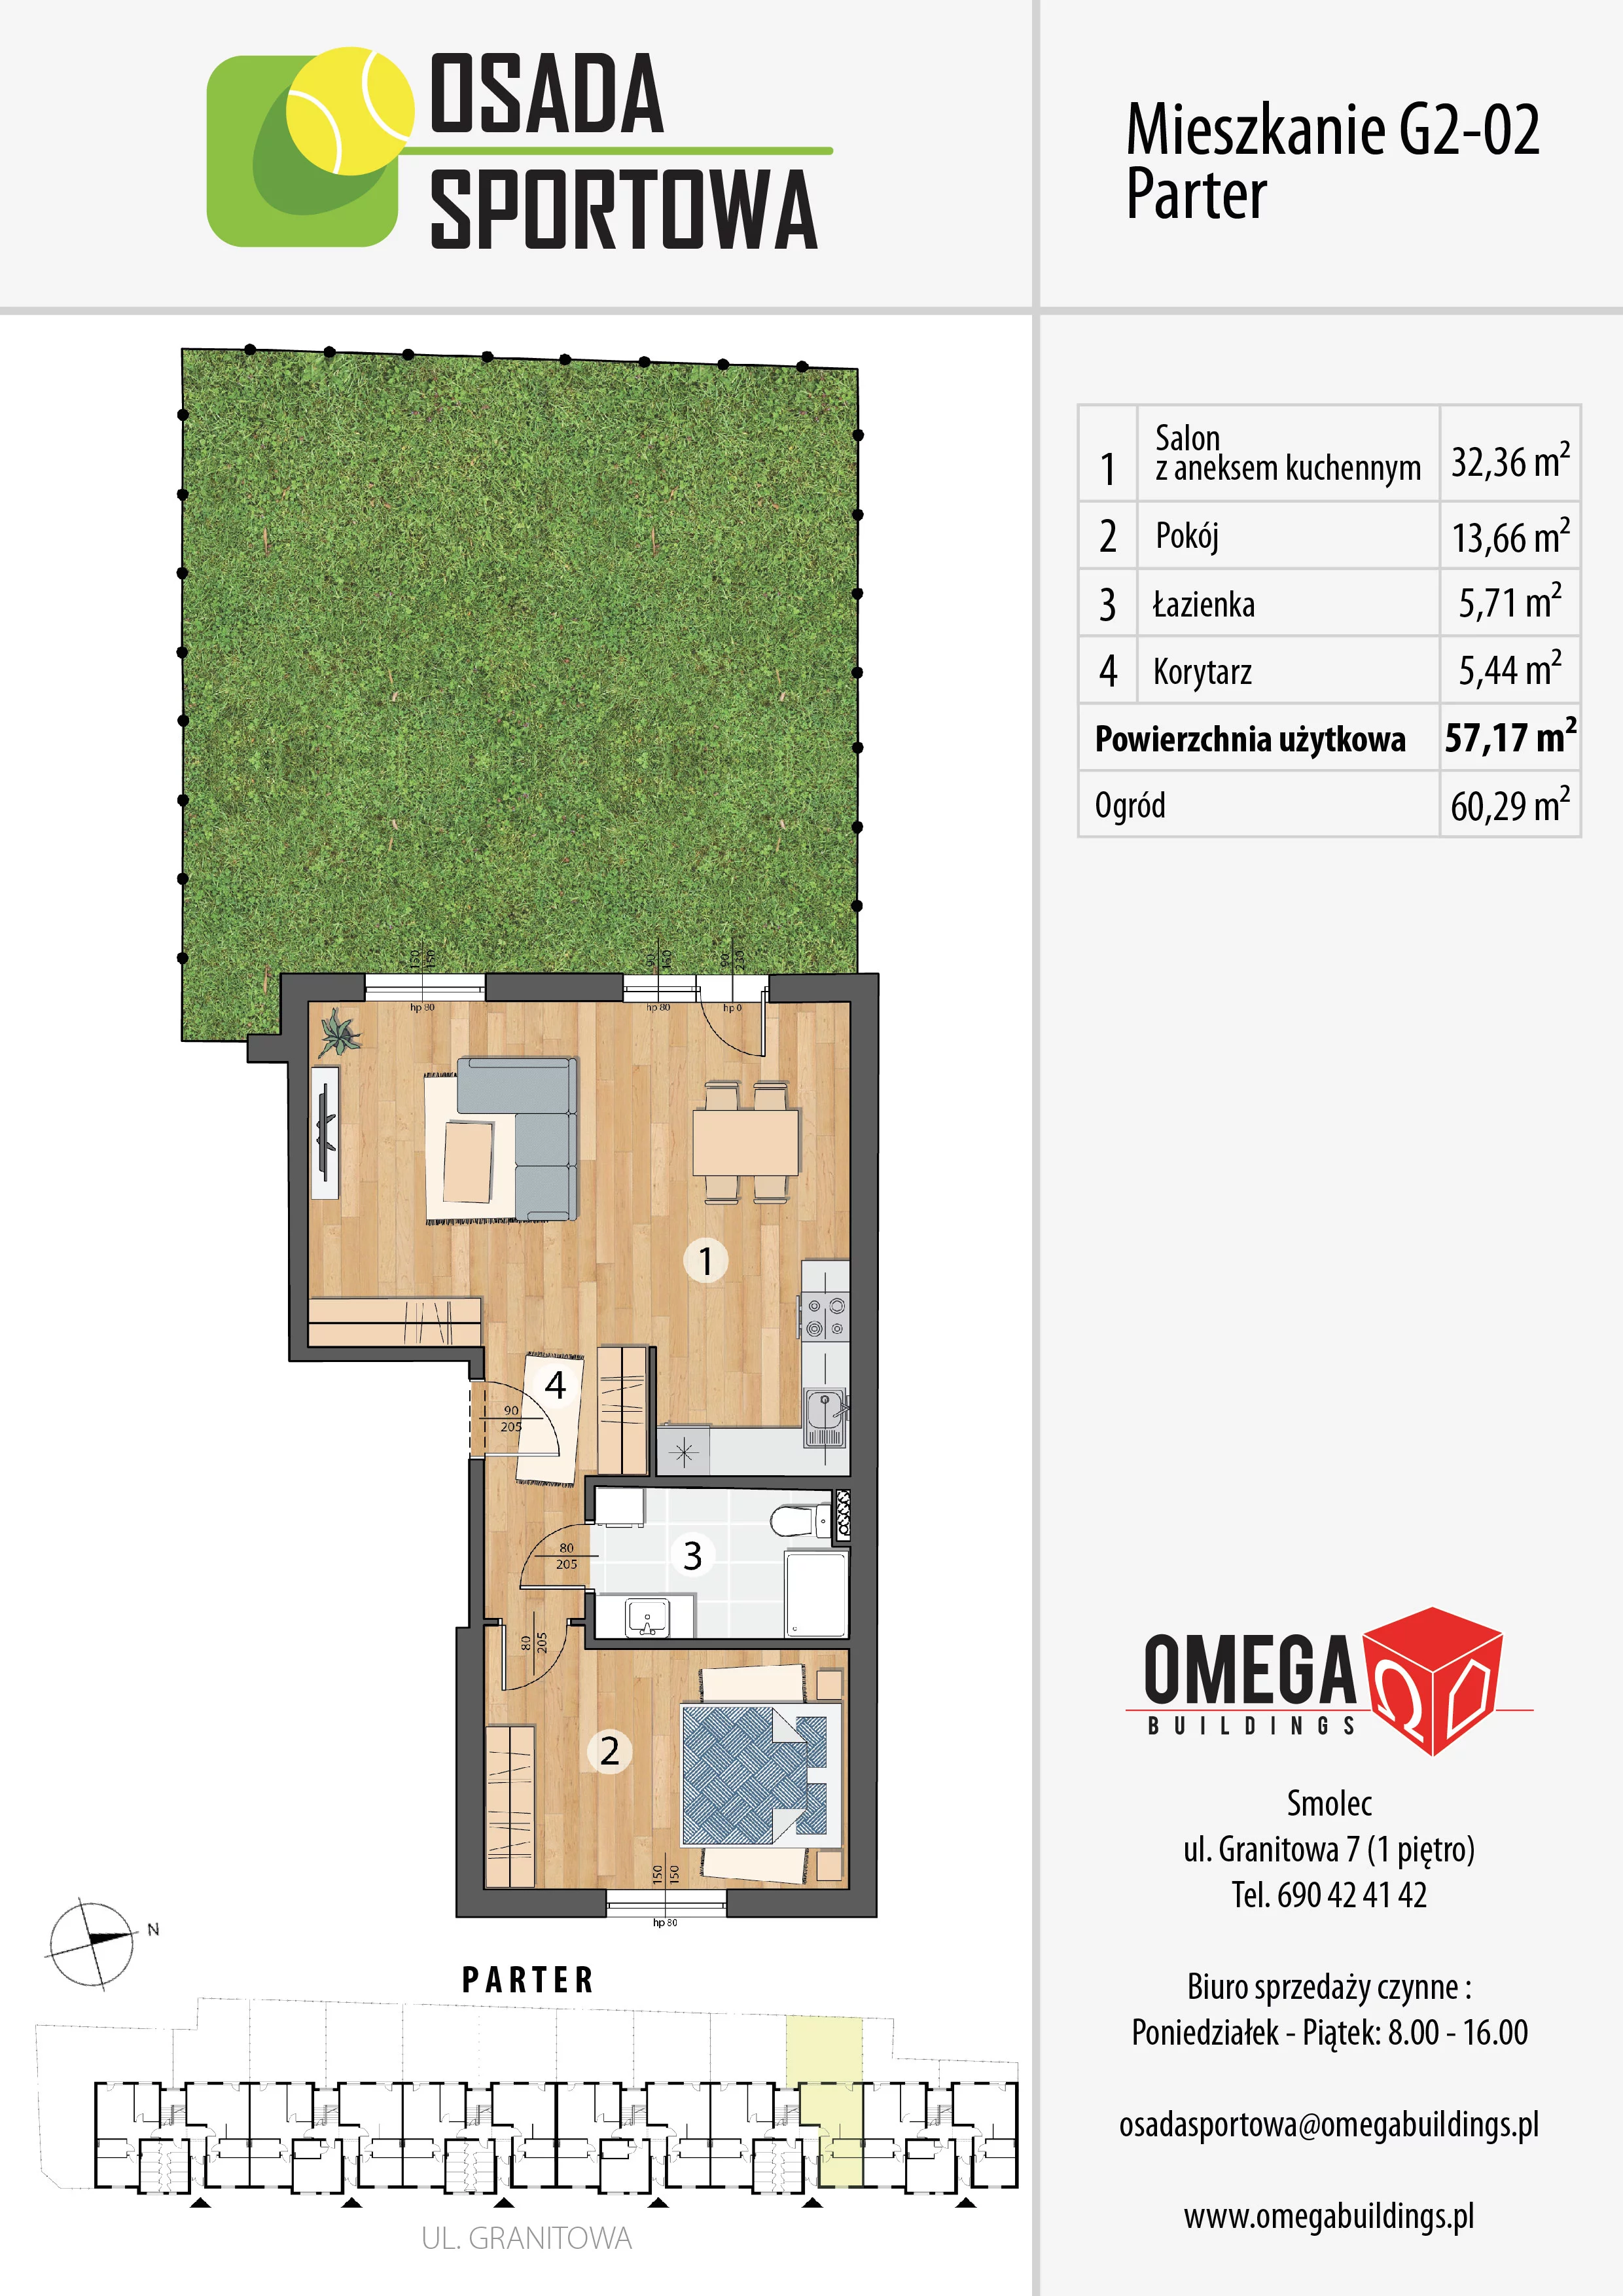 Mieszkanie 60,98 m², parter, oferta nr G2-02, Osada Sportowa Budynek G, Smolec, ul. Granitowa 52-62